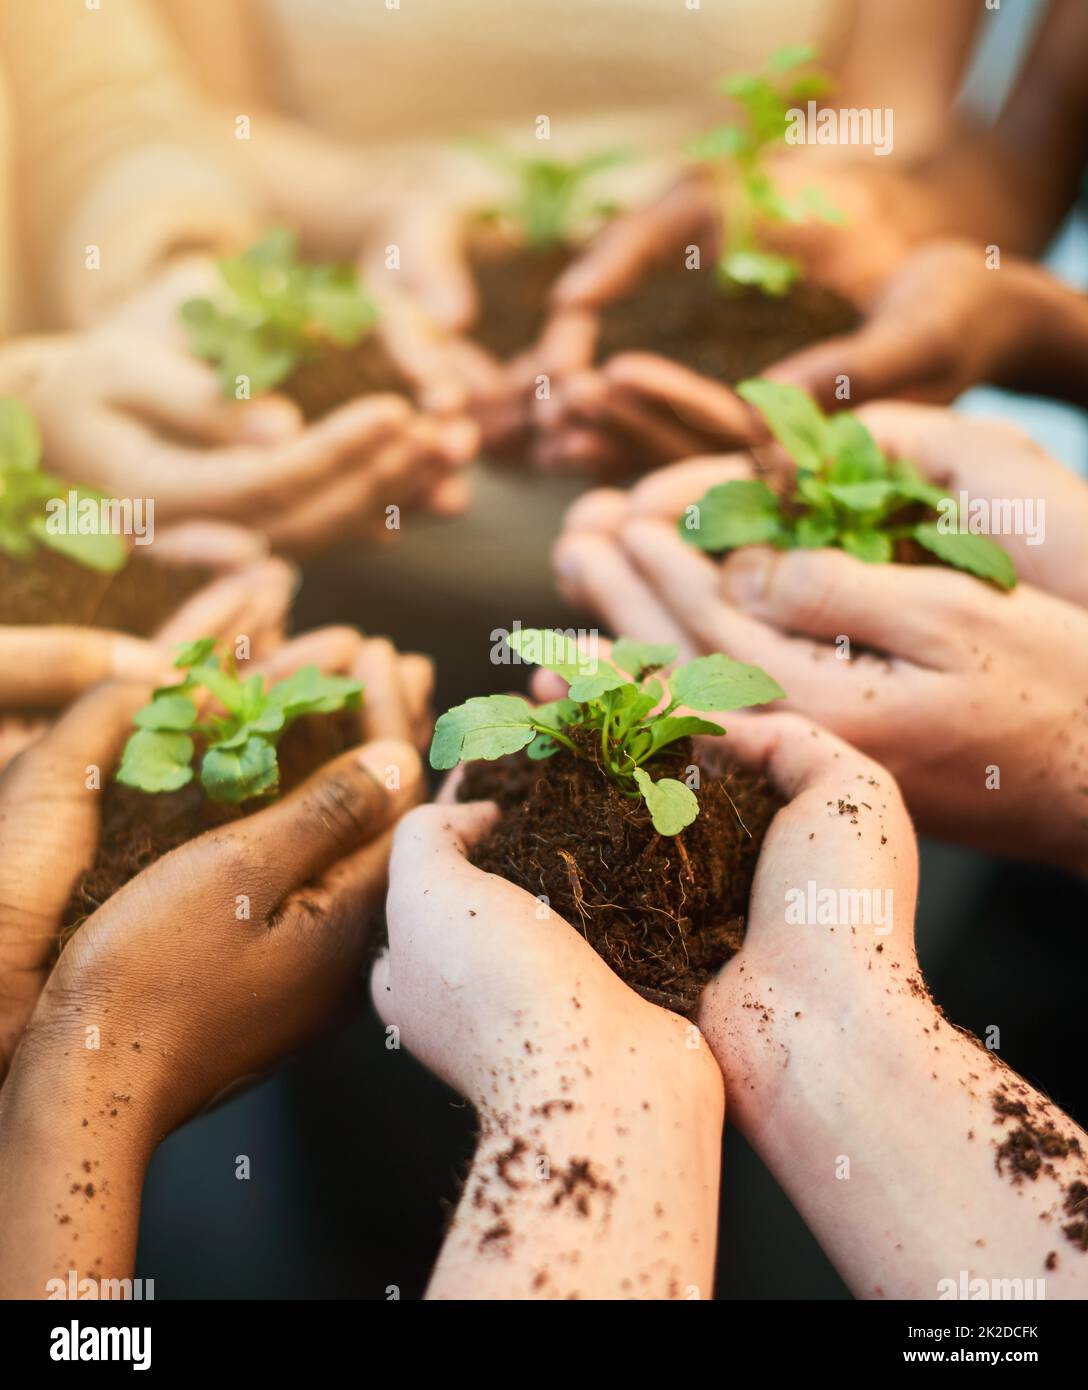 Gemeinsam die Zukunft fördern. Aufnahme einer Gruppe von Menschen, die jeweils eine im Boden wachsende Pflanze halten. Stockfoto